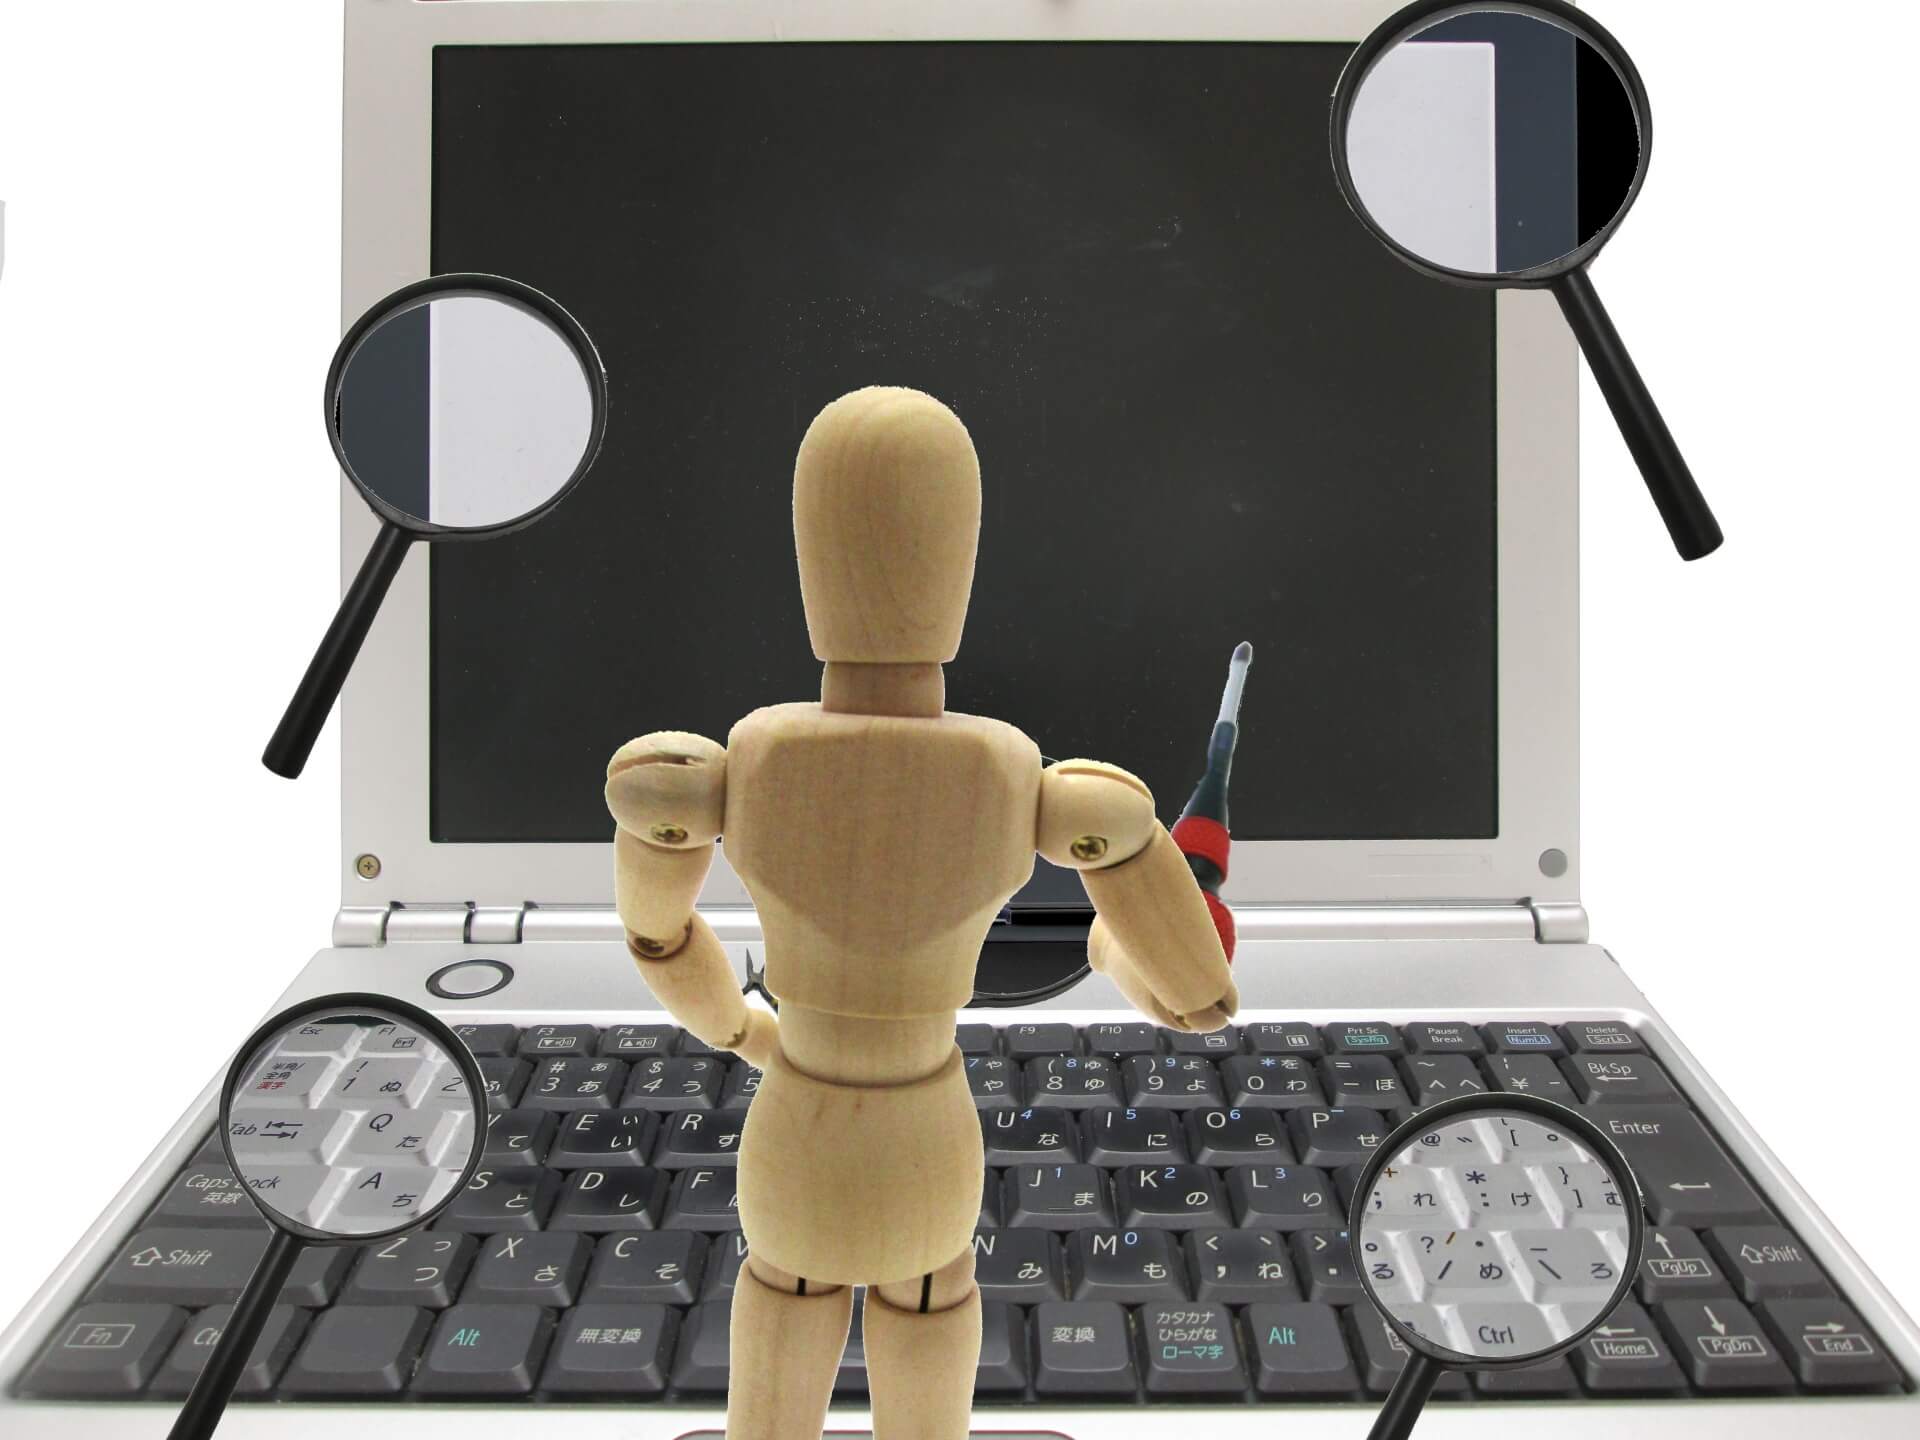 パソコンを修理している人形の画像